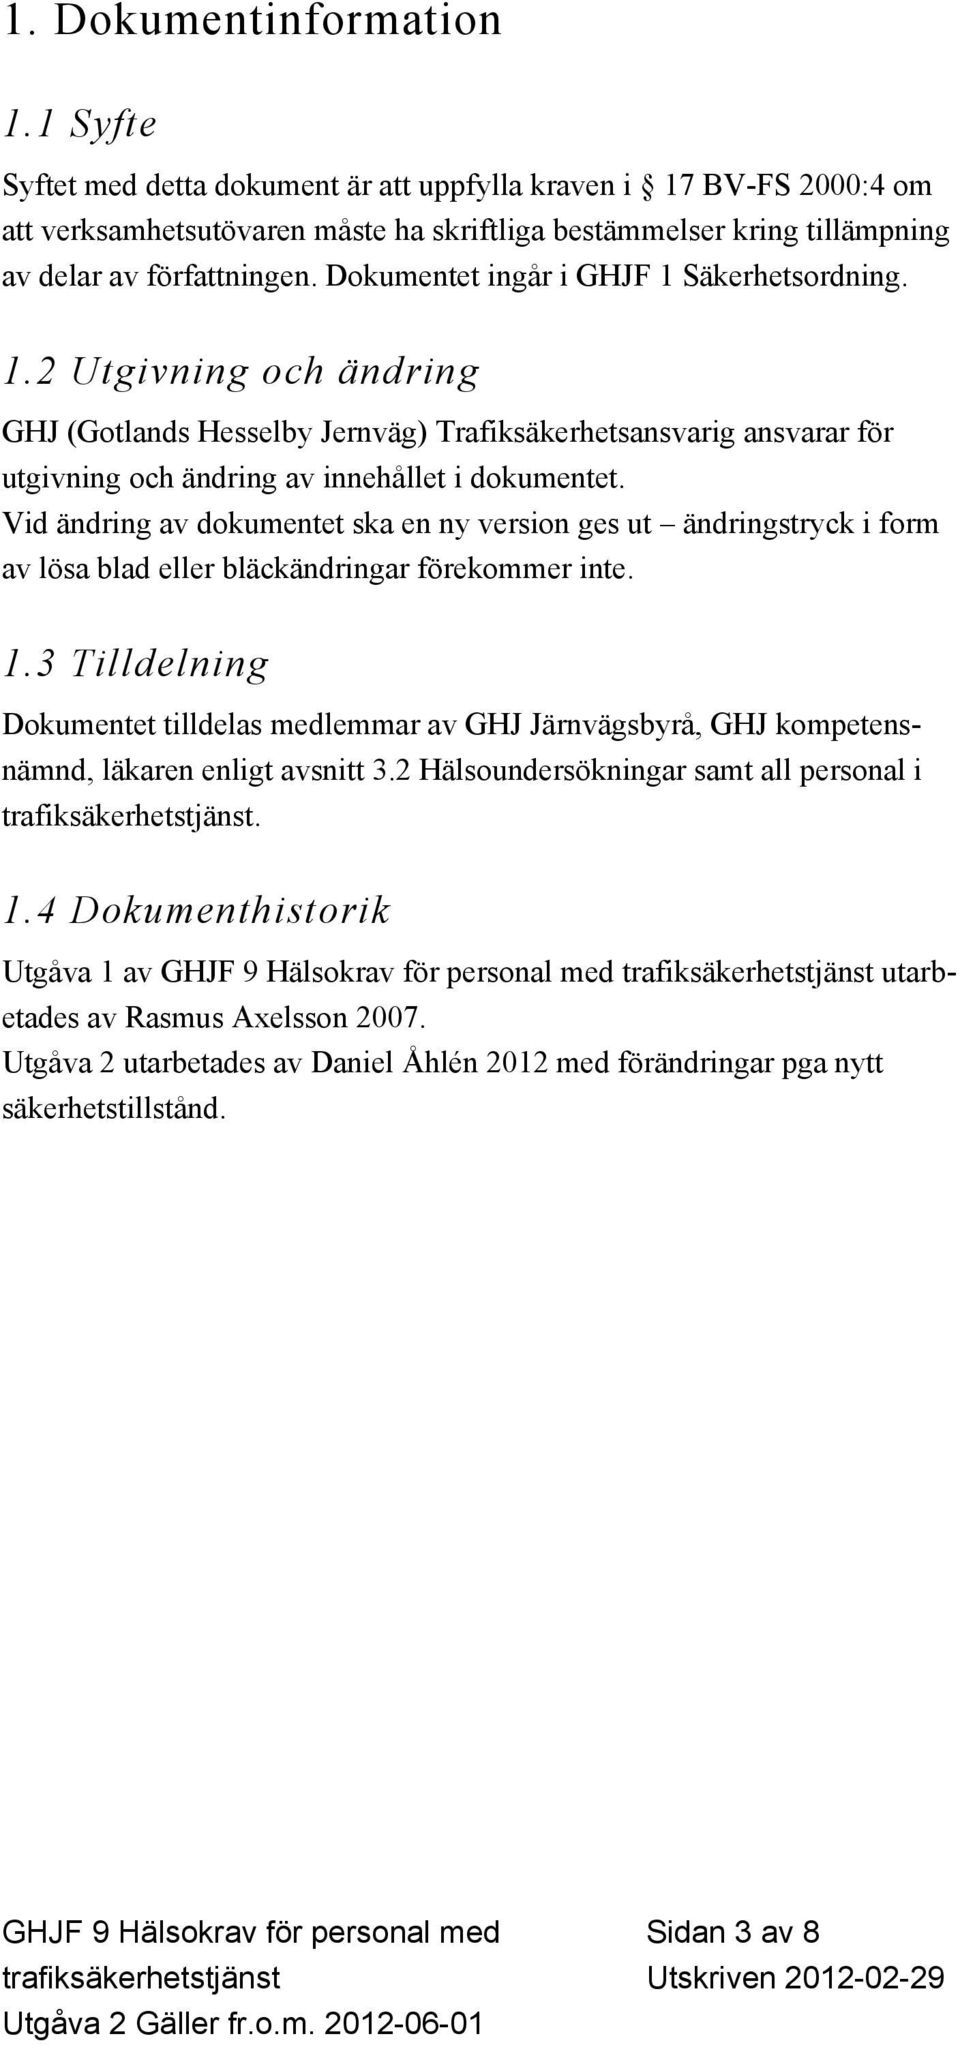 Dokumentet ingår i GHJF 1 Säkerhetsordning. 1.2 Utgivning och ändring GHJ (Gotlands Hesselby Jernväg) Trafiksäkerhetsansvarig ansvarar för utgivning och ändring av innehållet i dokumentet.